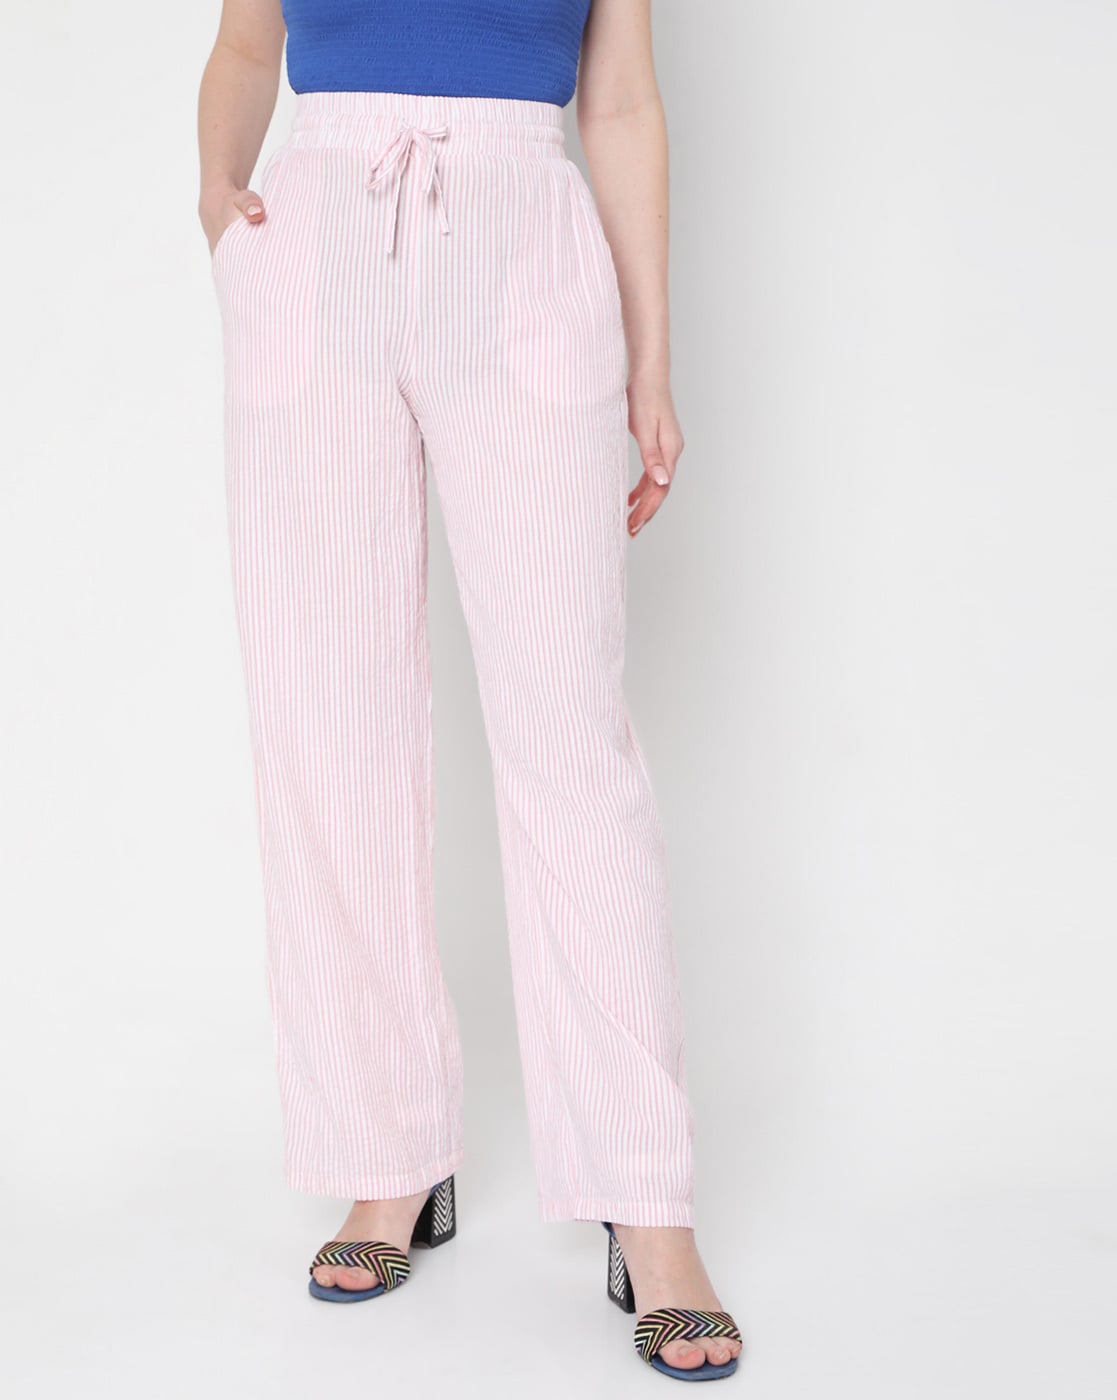 Buy Blue Trousers  Pants for Women by Vero Moda Online  Ajiocom